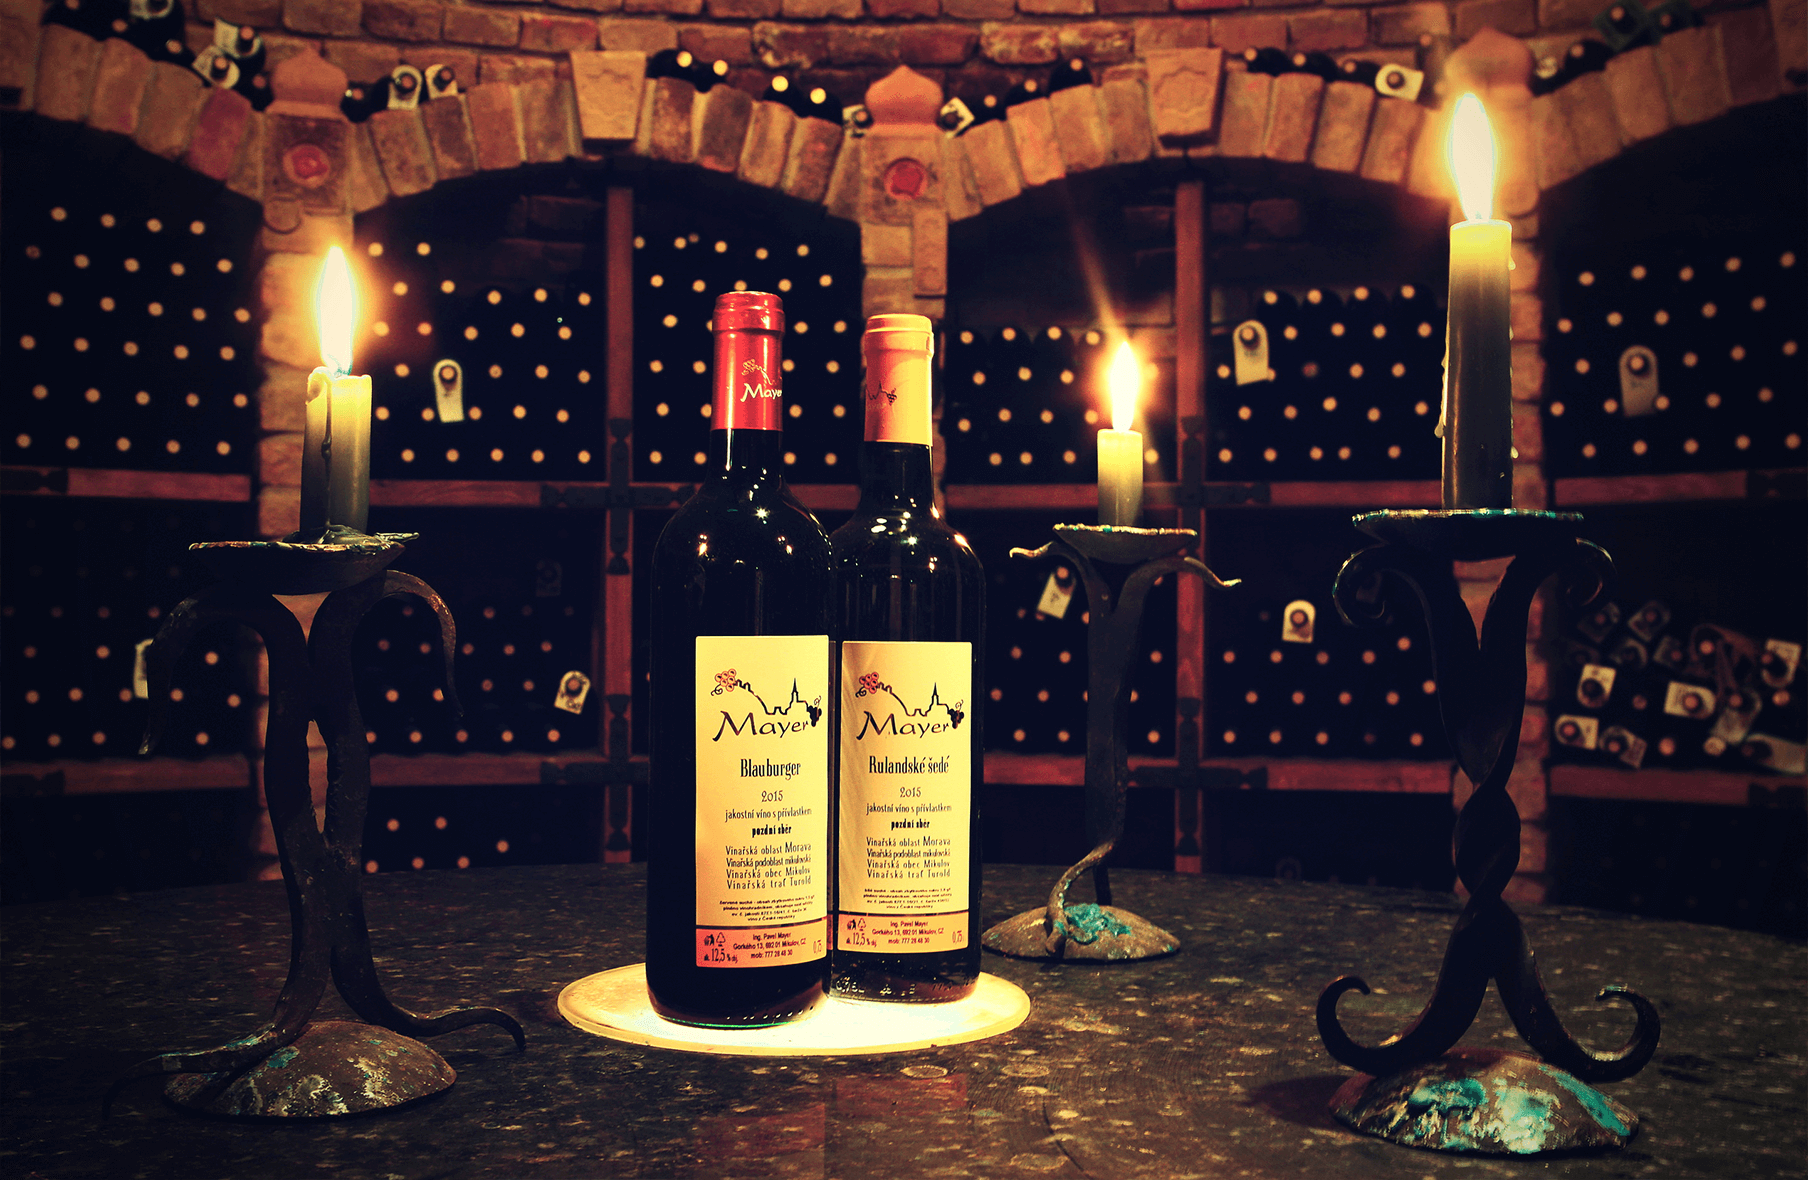 Vinný sklep